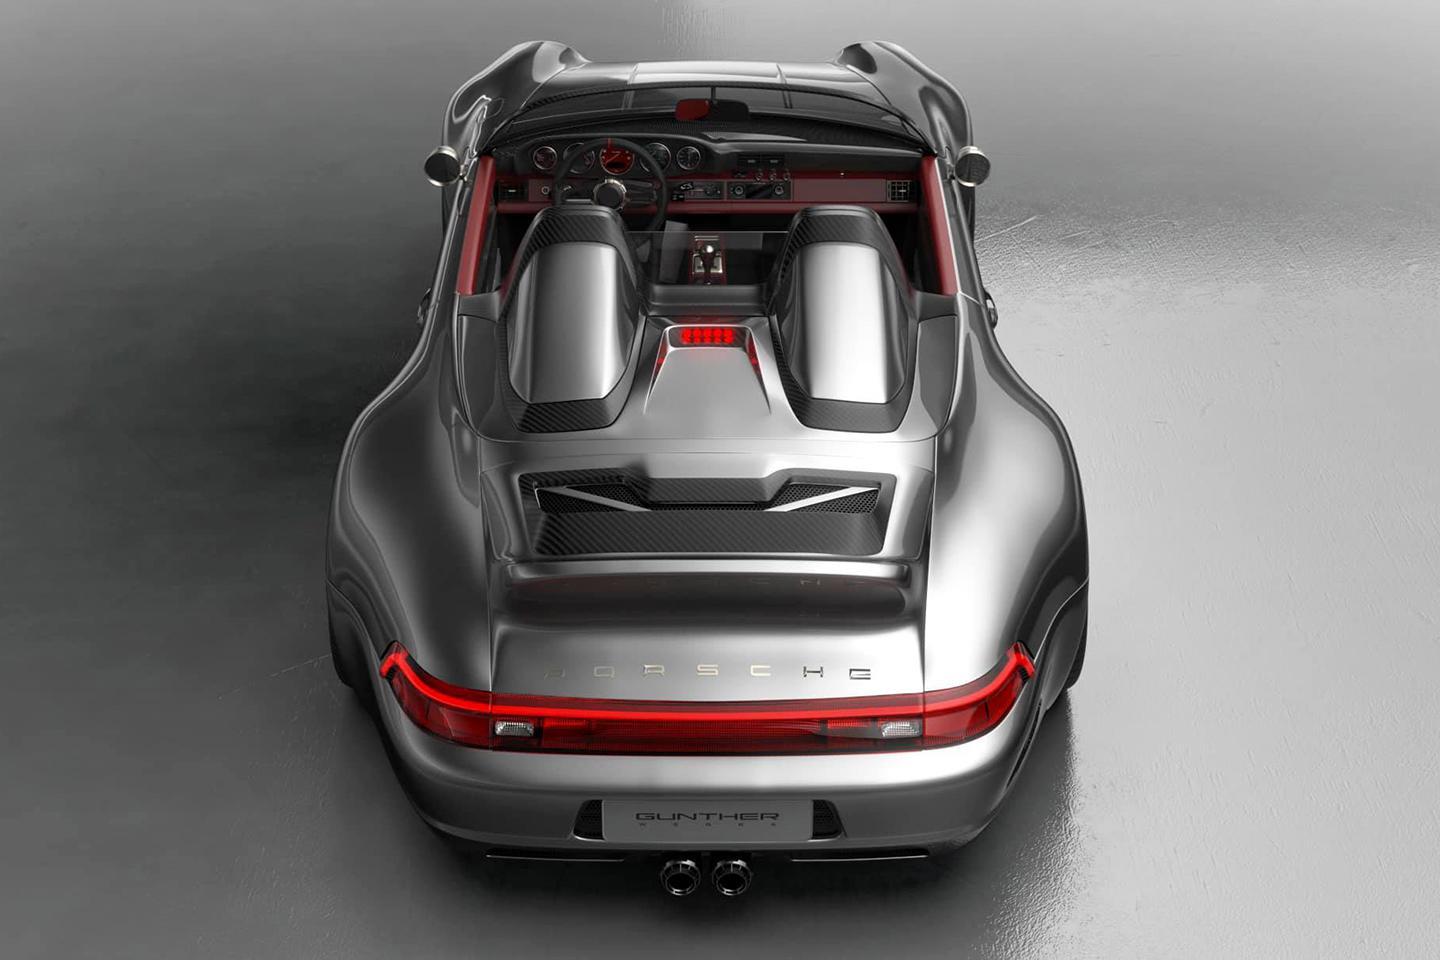 Porsche 911 Gunther Werks'S Remastered Wallpapers